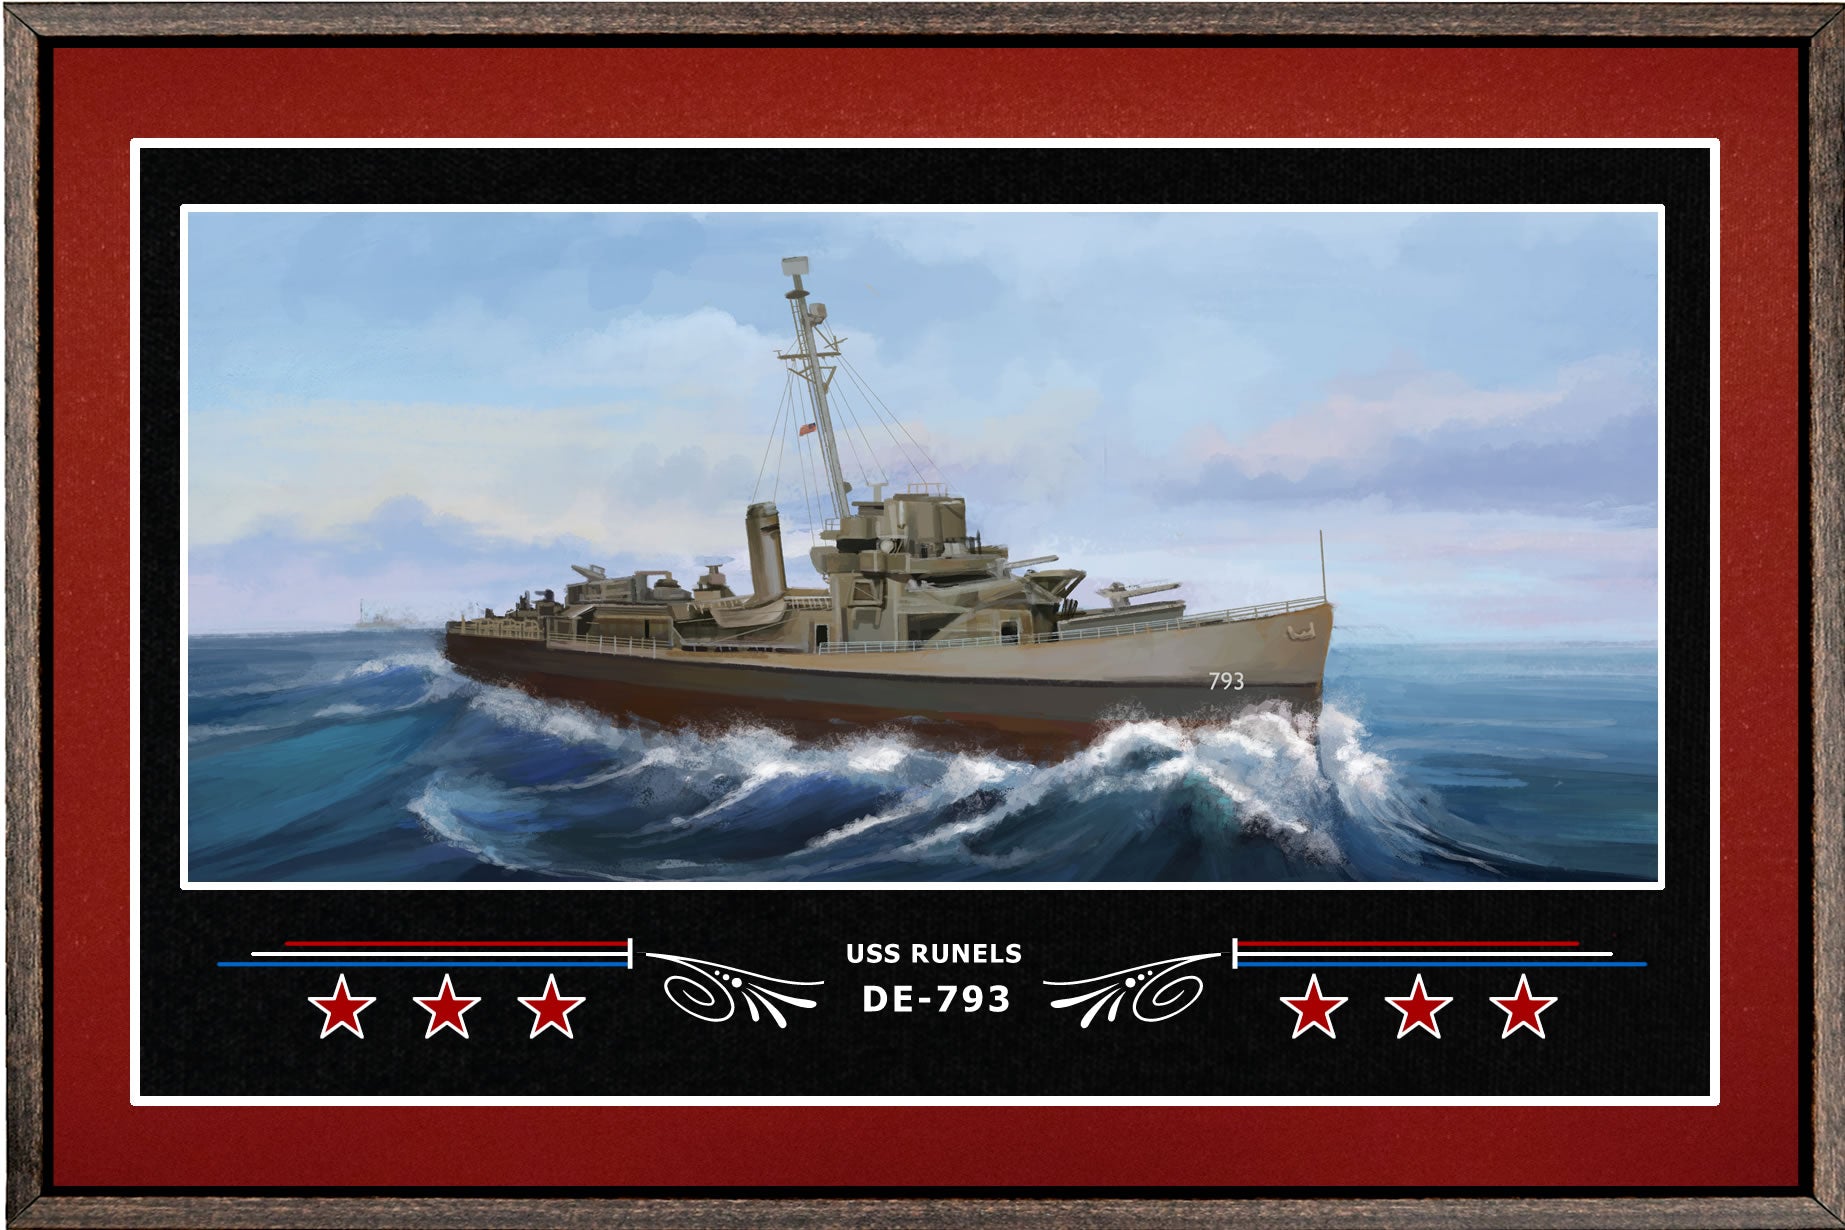 USS RUNELS DE 793 BOX FRAMED CANVAS ART BURGUNDY